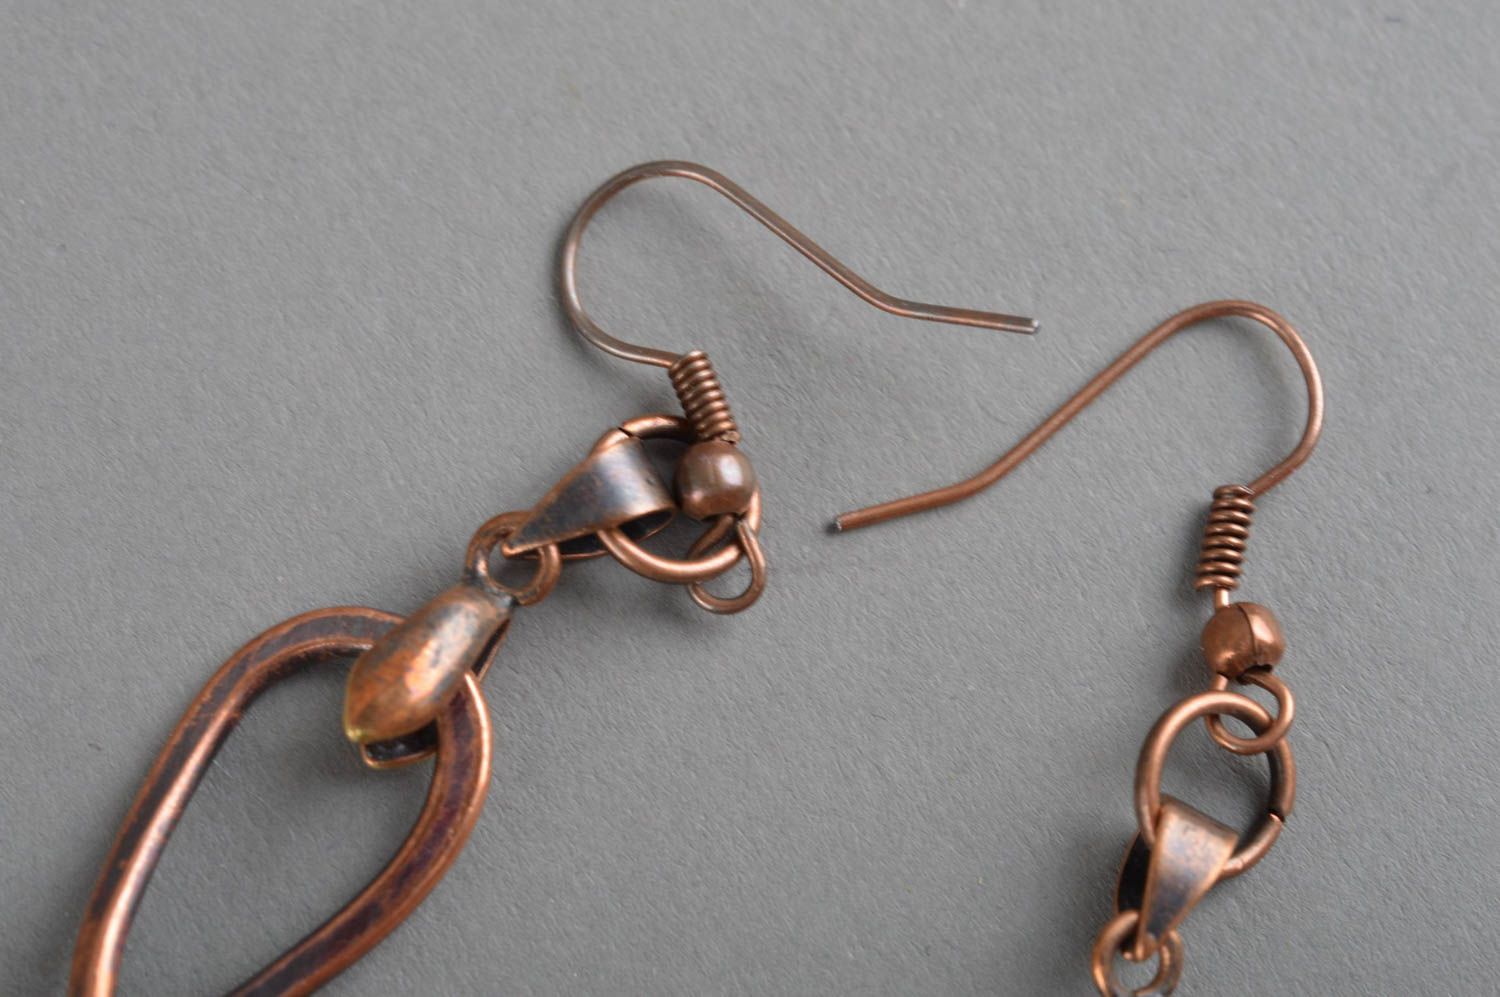 Unusual handmade metal earrings stylish copper earrings designer jewelry ideas photo 4